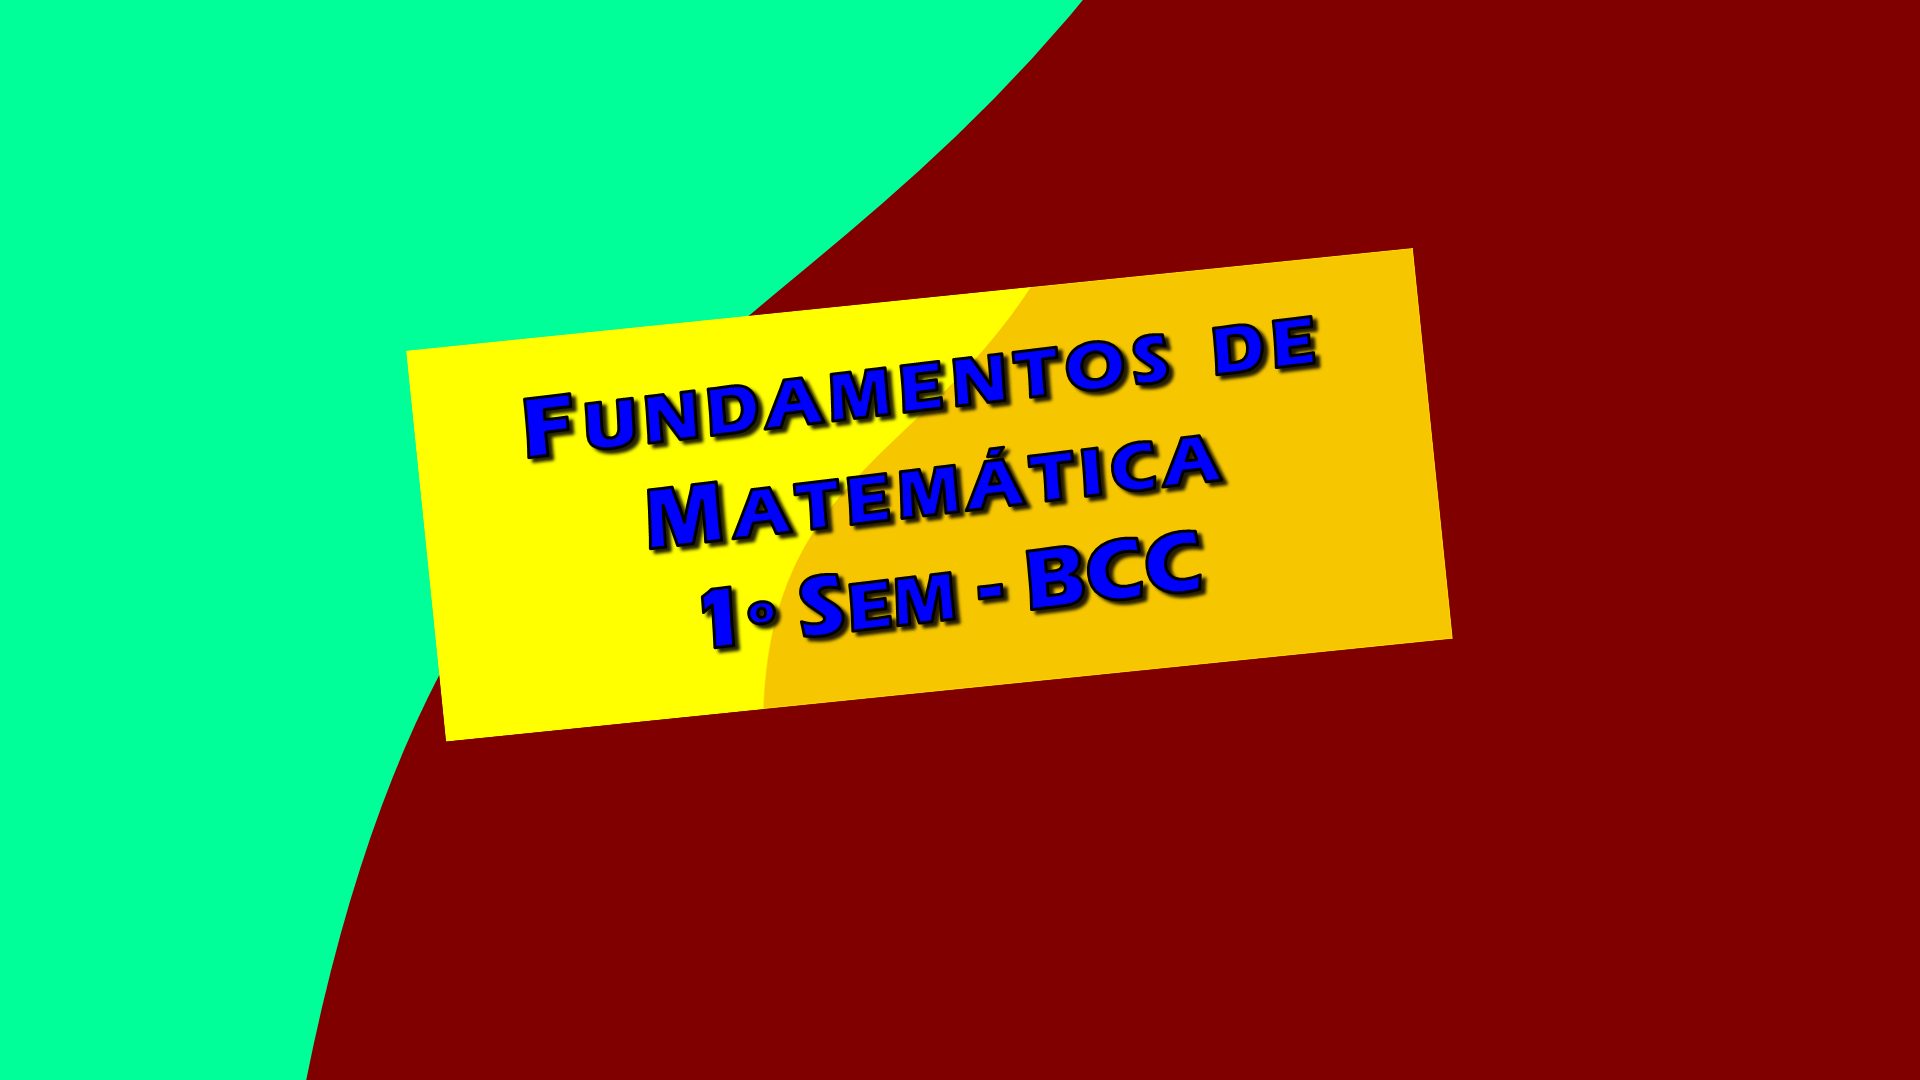 Fundamentos de Matemática - 1o Sem - BCC - Prof. Giácomo